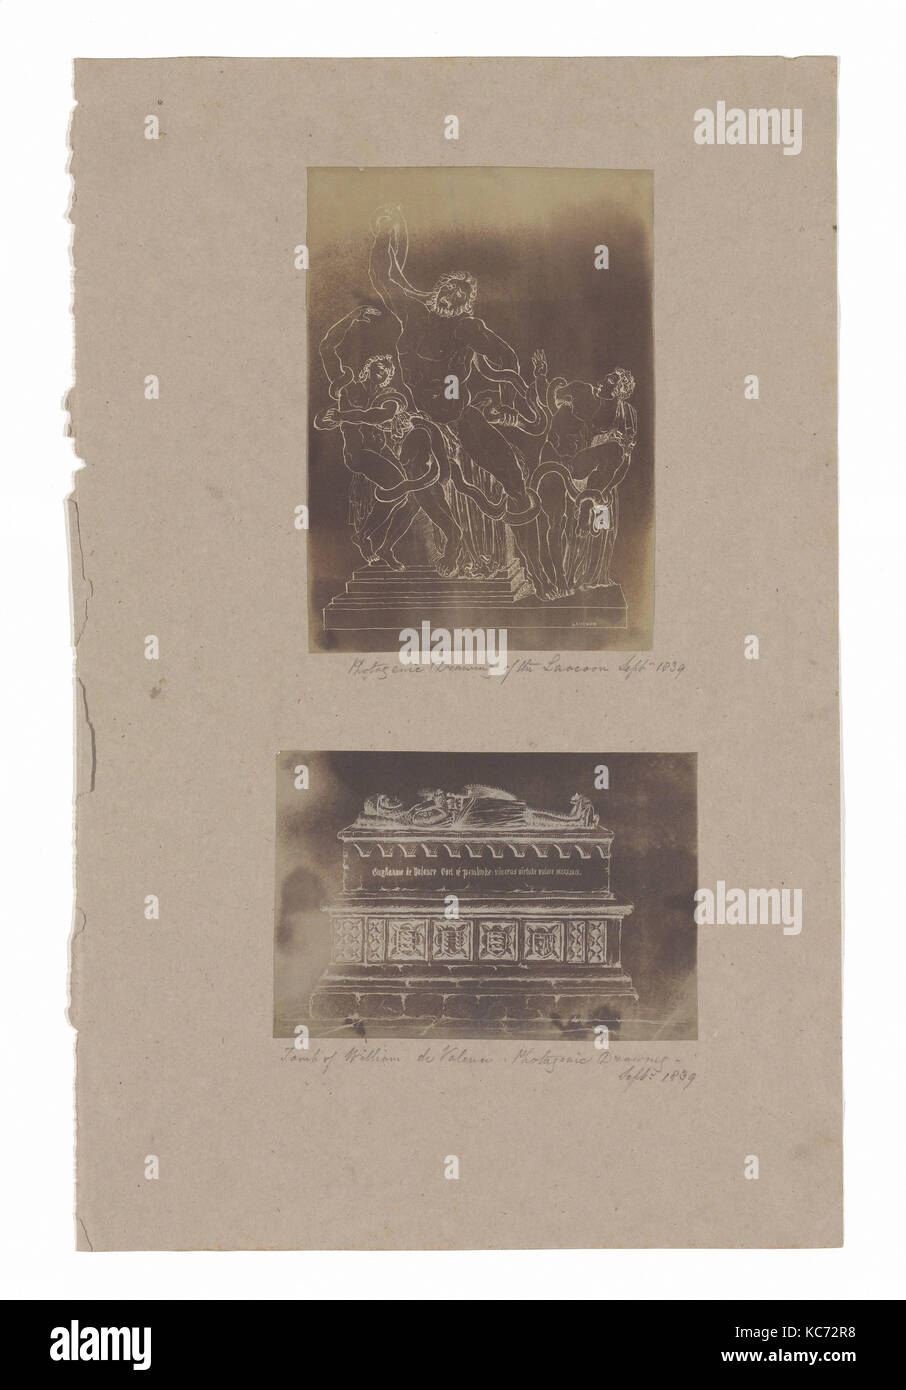 Dessin photogénique du Laocoon, septembre 1839 ; tombe de Guillaume de Valence, l'inconnu, 1839 Banque D'Images